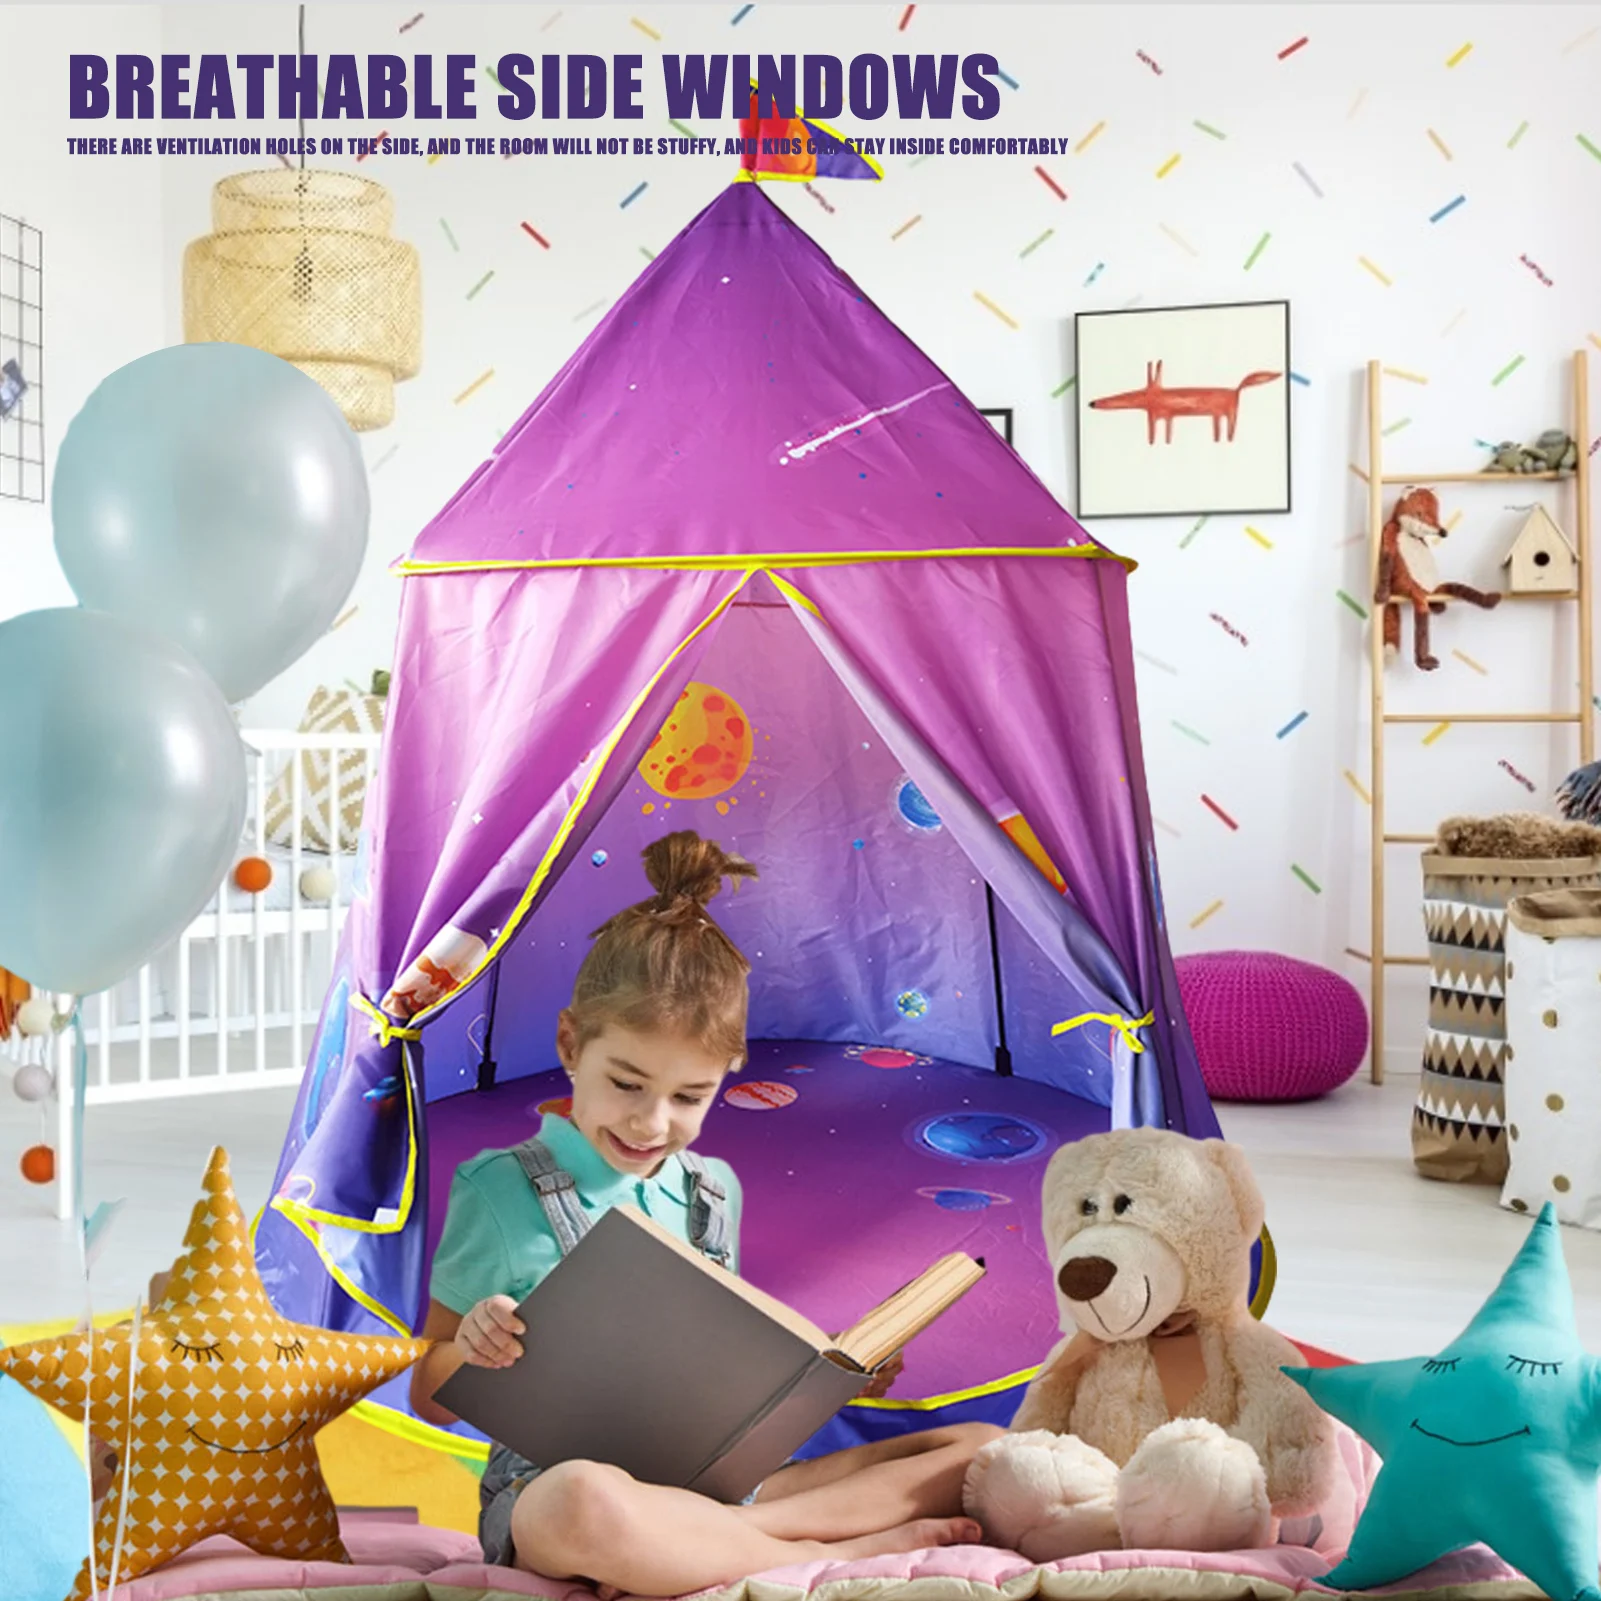 

Игровая палатка портативная складная палатка Tipi Prince детская игровая палатка для мальчиков домик детские подарки палатки для игр на открыто...